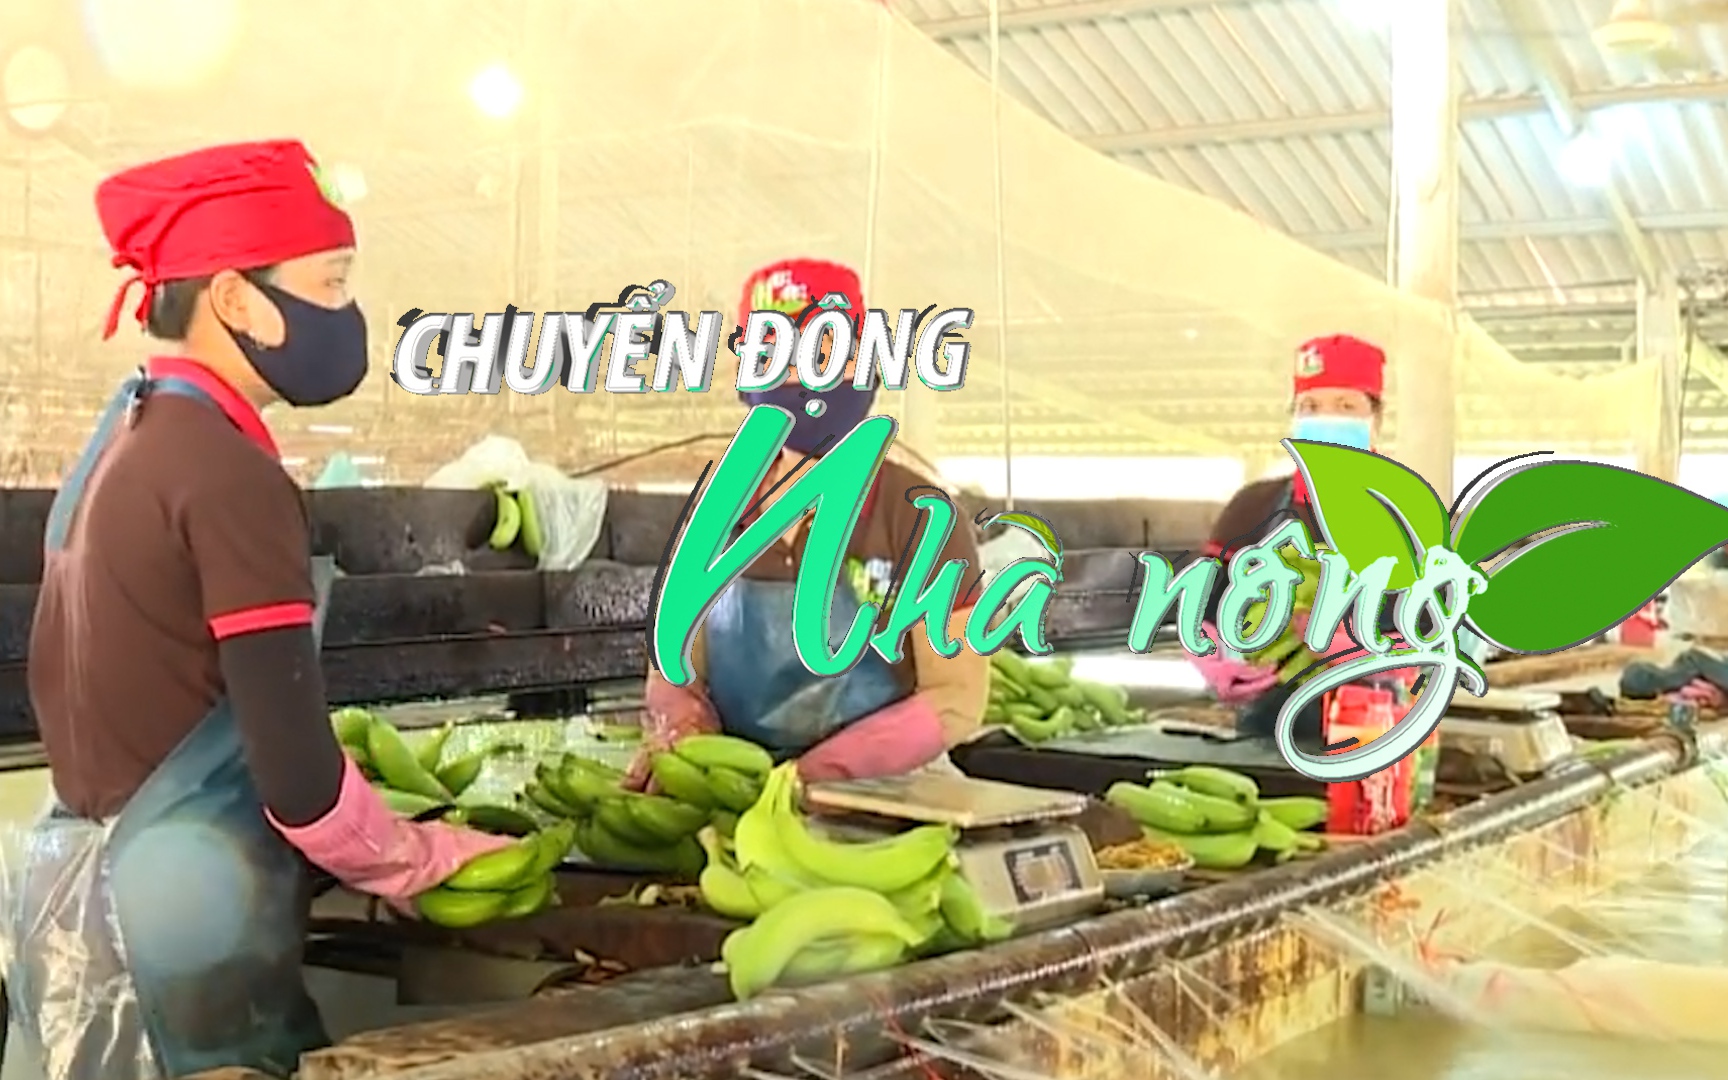 Chuyển động Nhà nông 1/11: Ký Nghị định thư về xuất khẩu quả chuối tươi từ Việt Nam sang Trung Quốc